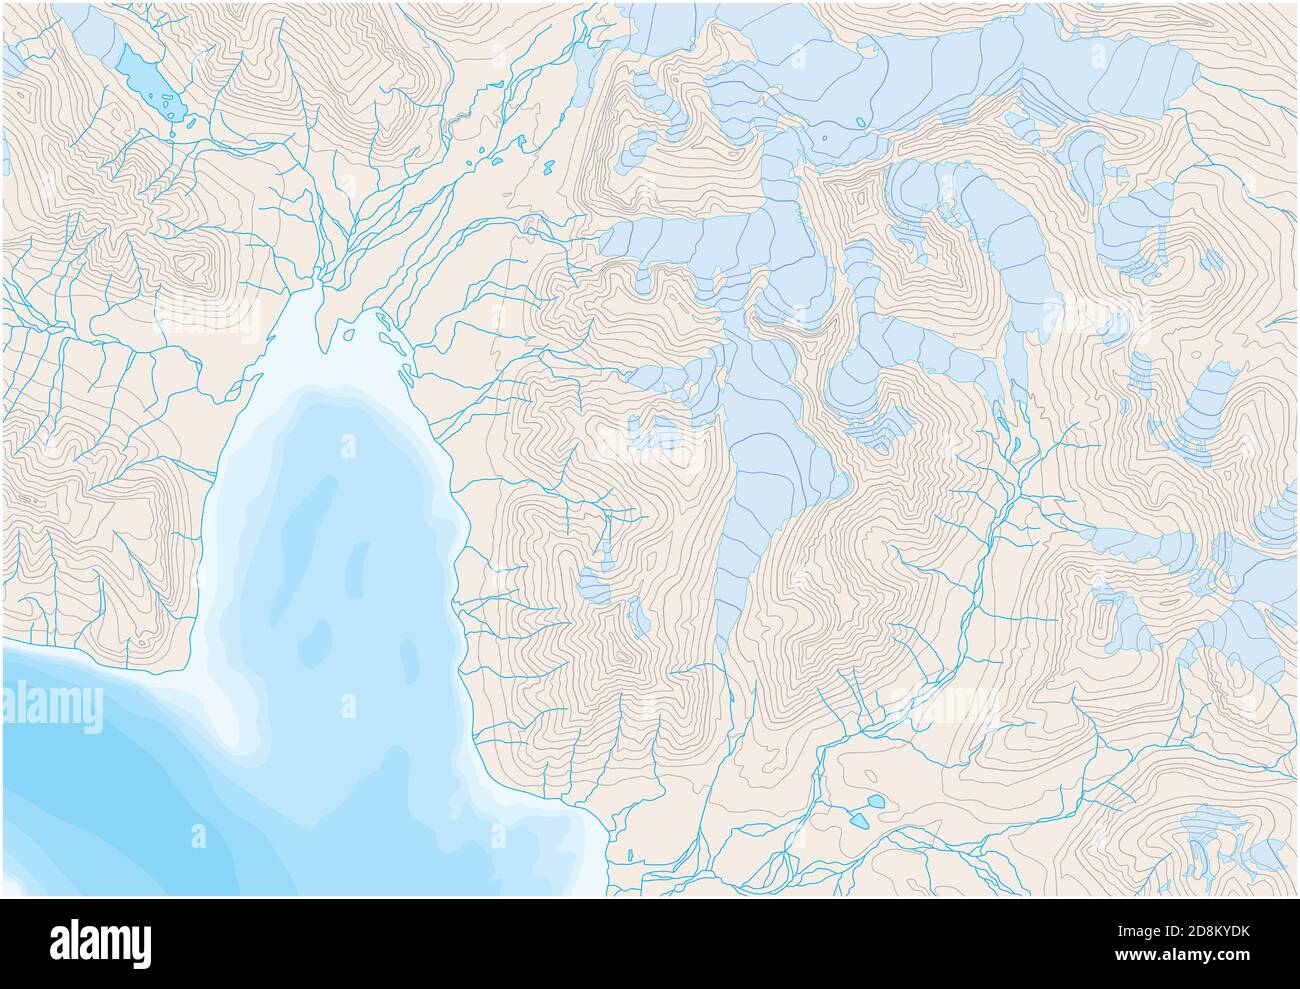 Mappa topografica astratta con linee di contorno e illustrazione dei ghiacciai Illustrazione Vettoriale